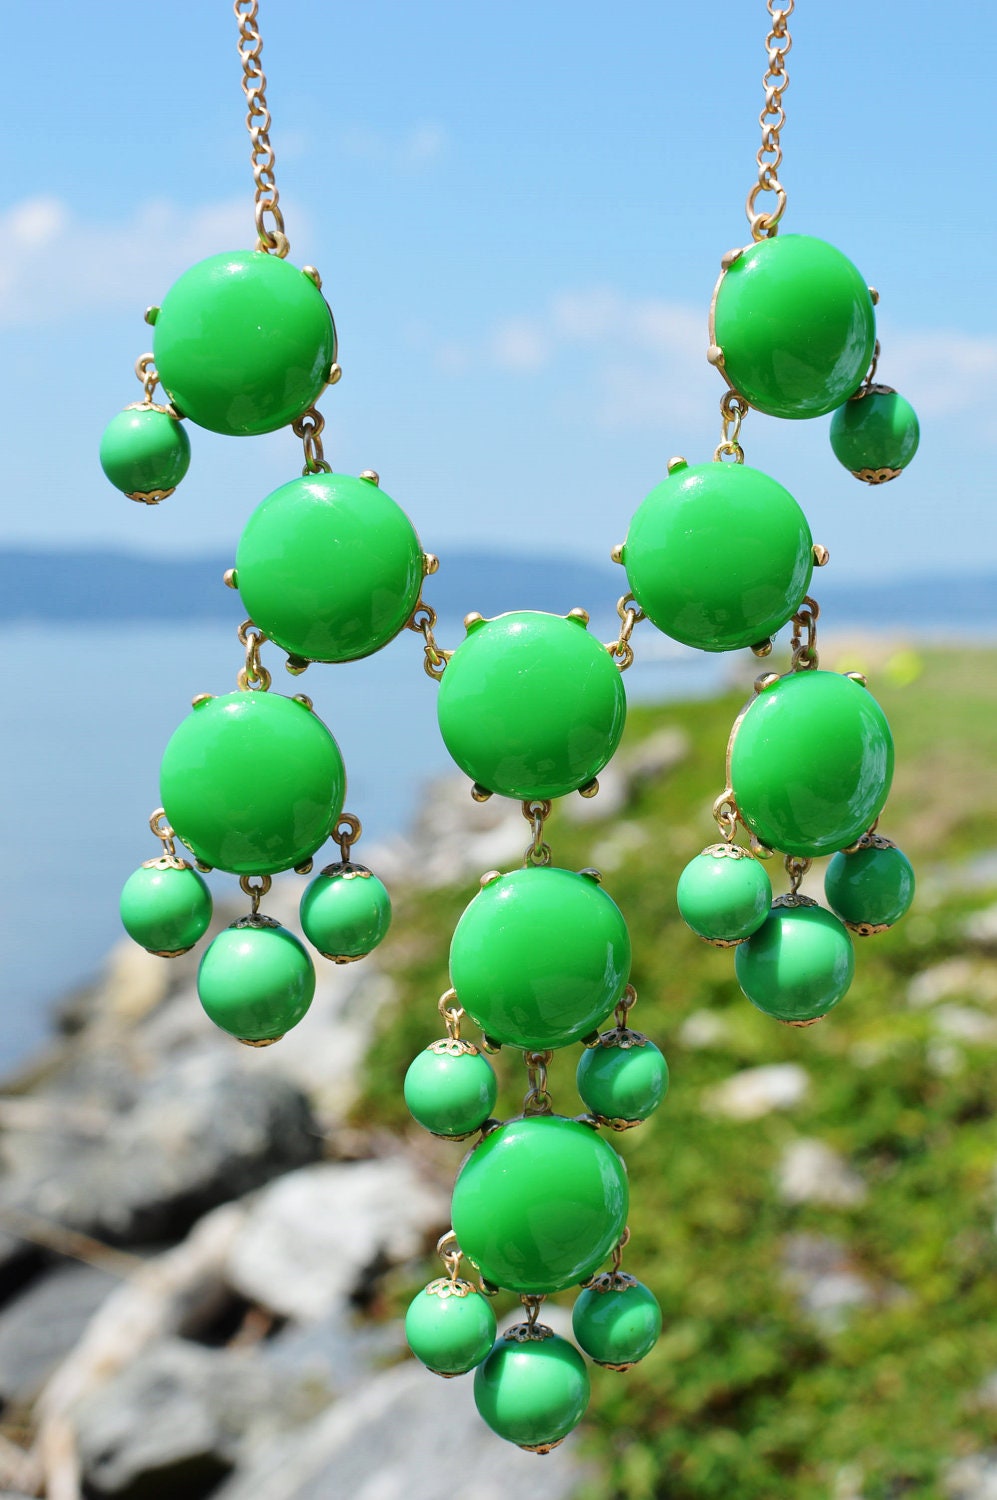 FREE NECKLACE SALE Bubble Bib Necklace- Bib Bubble Necklace Green